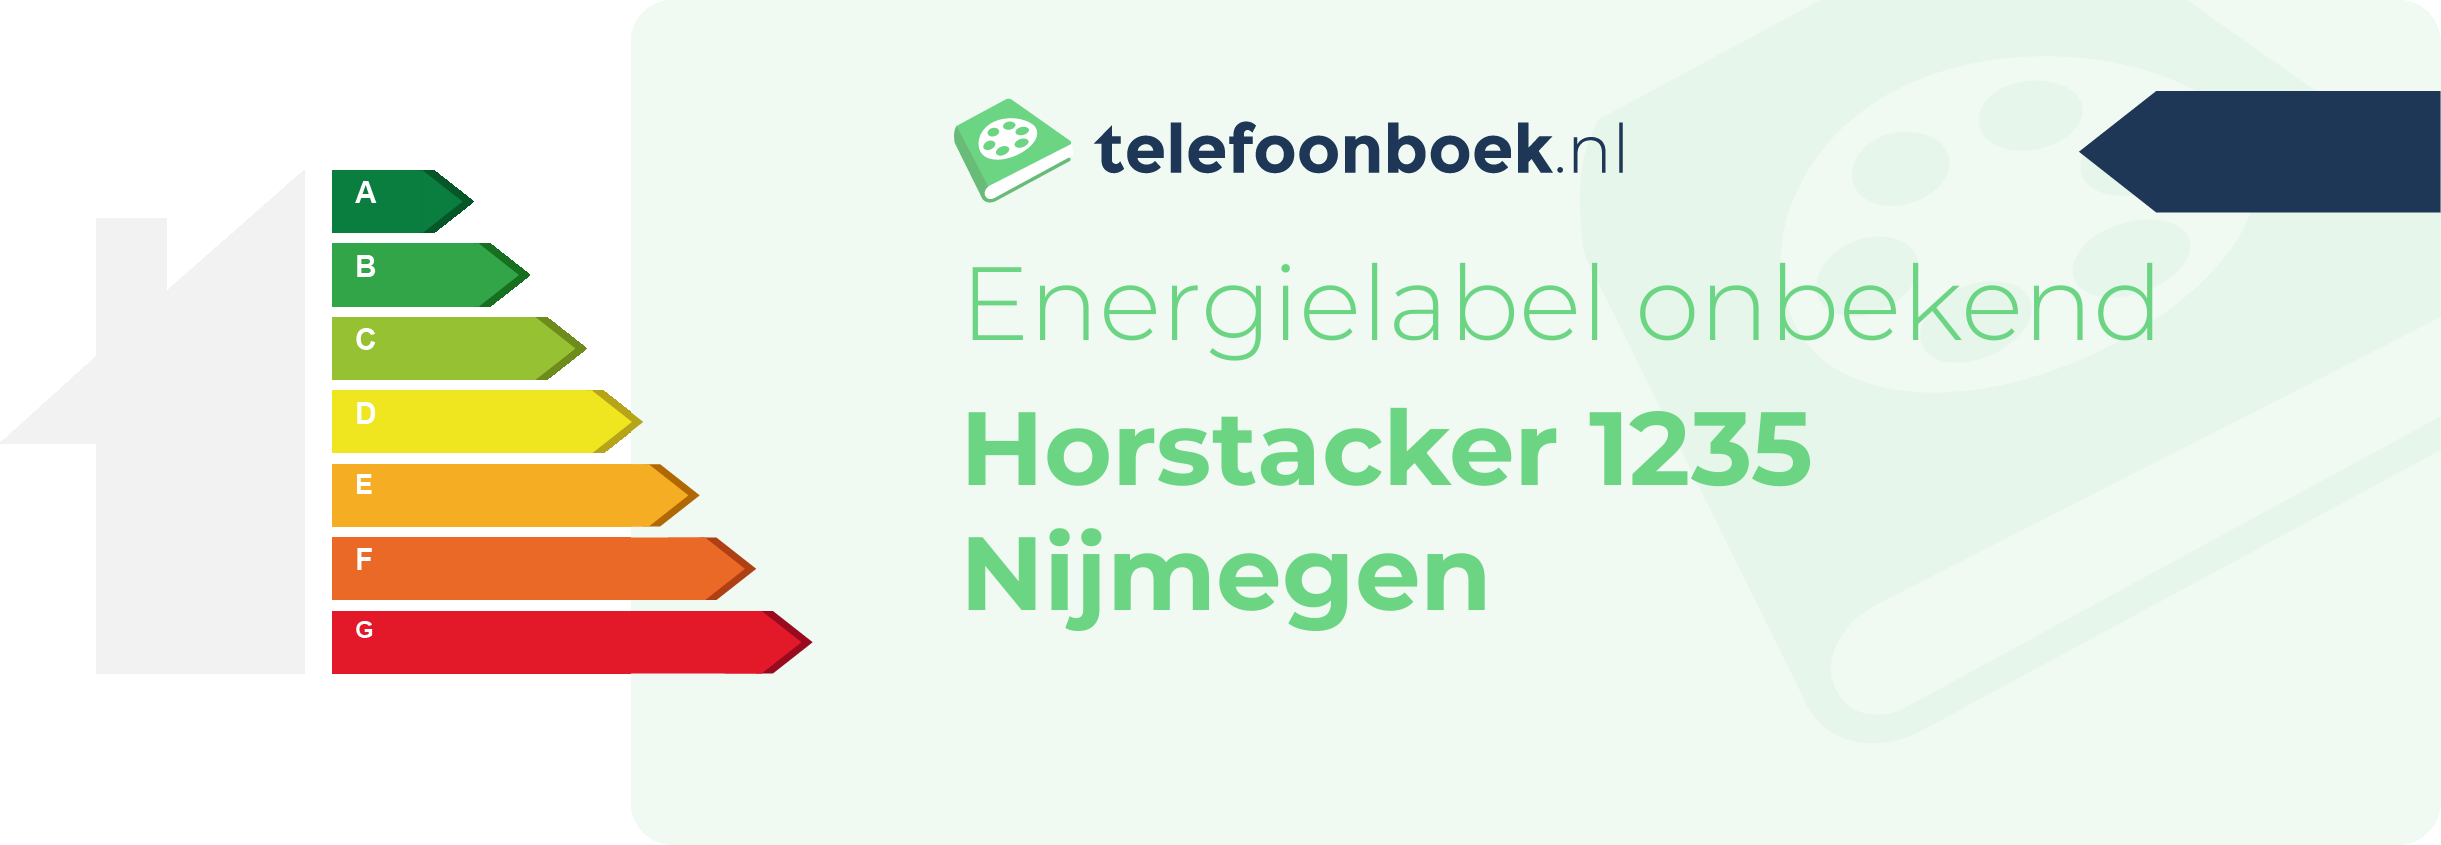 Energielabel Horstacker 1235 Nijmegen